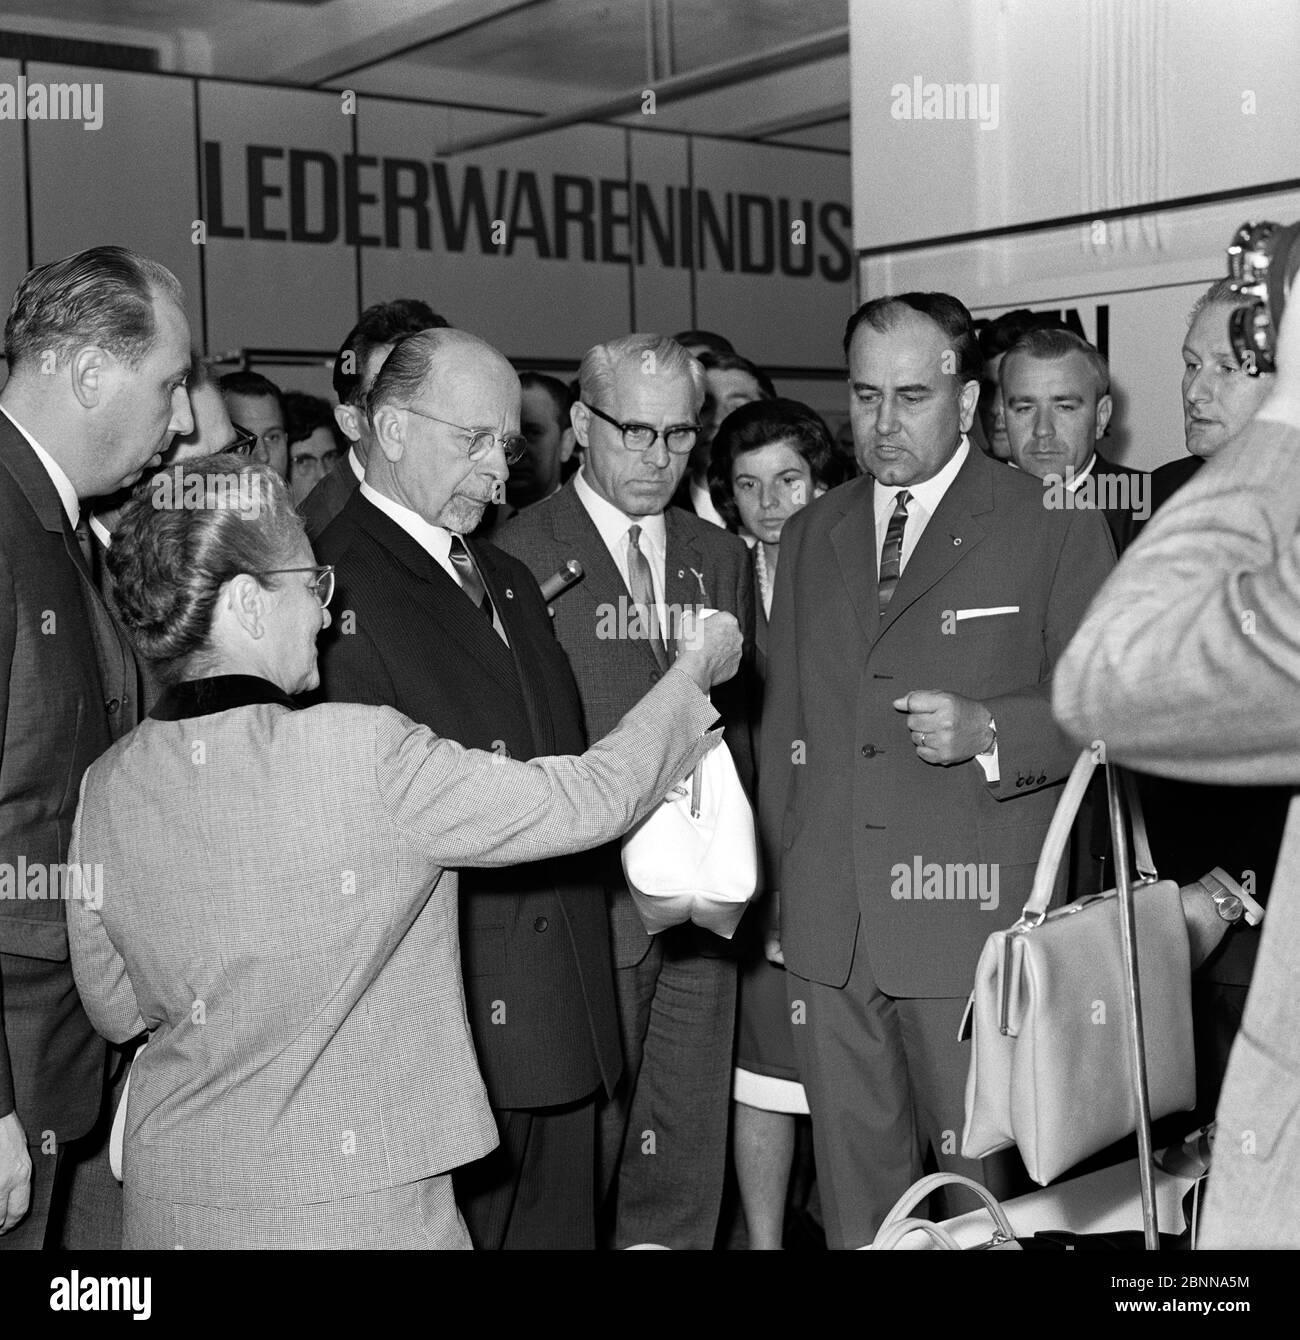 DDR-Landesratsvorsitzender Walter Ulbricht mit Lotte Ulbrich, Willi Stoph und weiteren Funktionären auf einer Führung durch die Messe auf der Herbstmesse 1966 in Leipzig Stockfoto